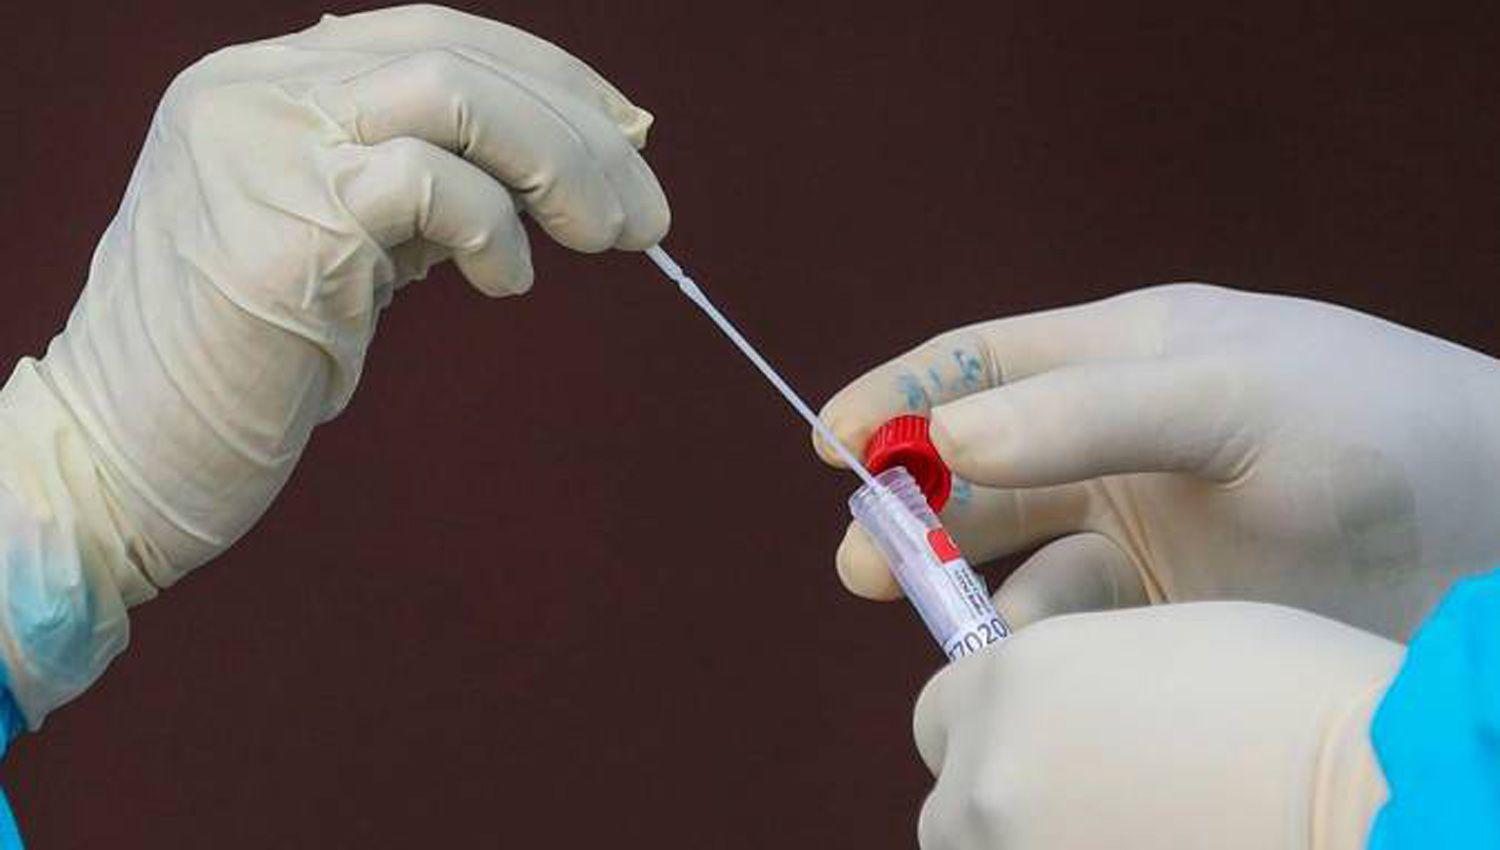 Proponen hisopados anales para los empleados que no se vacunen contra el Covid